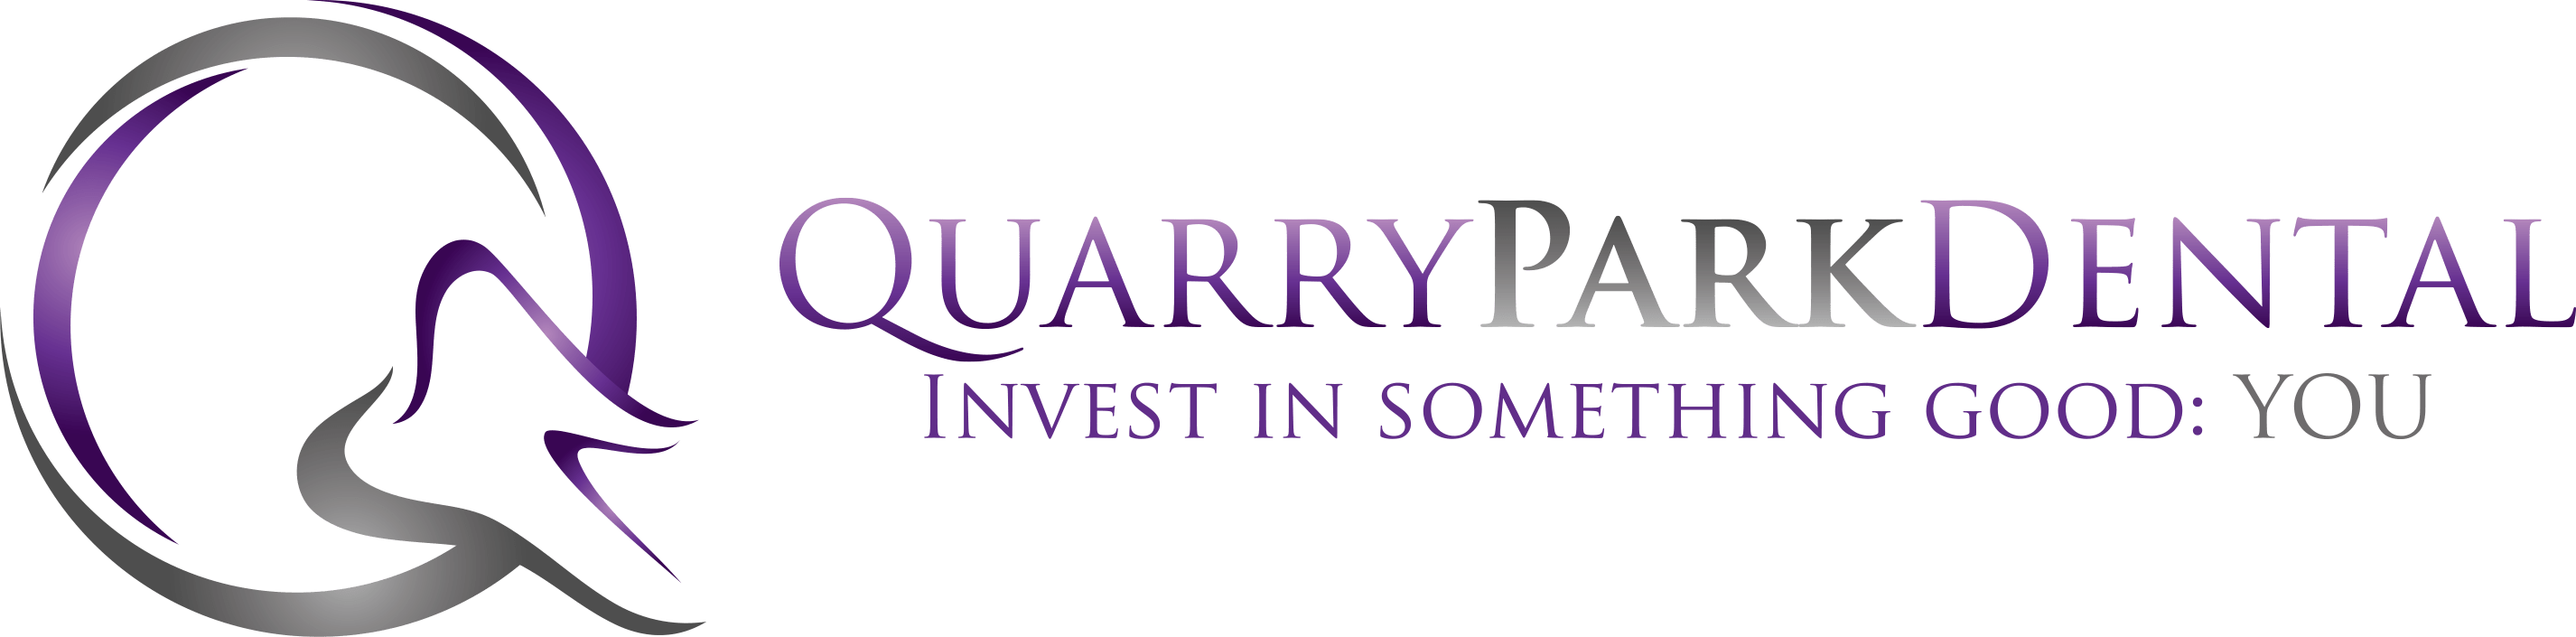 Quarry Park Dental